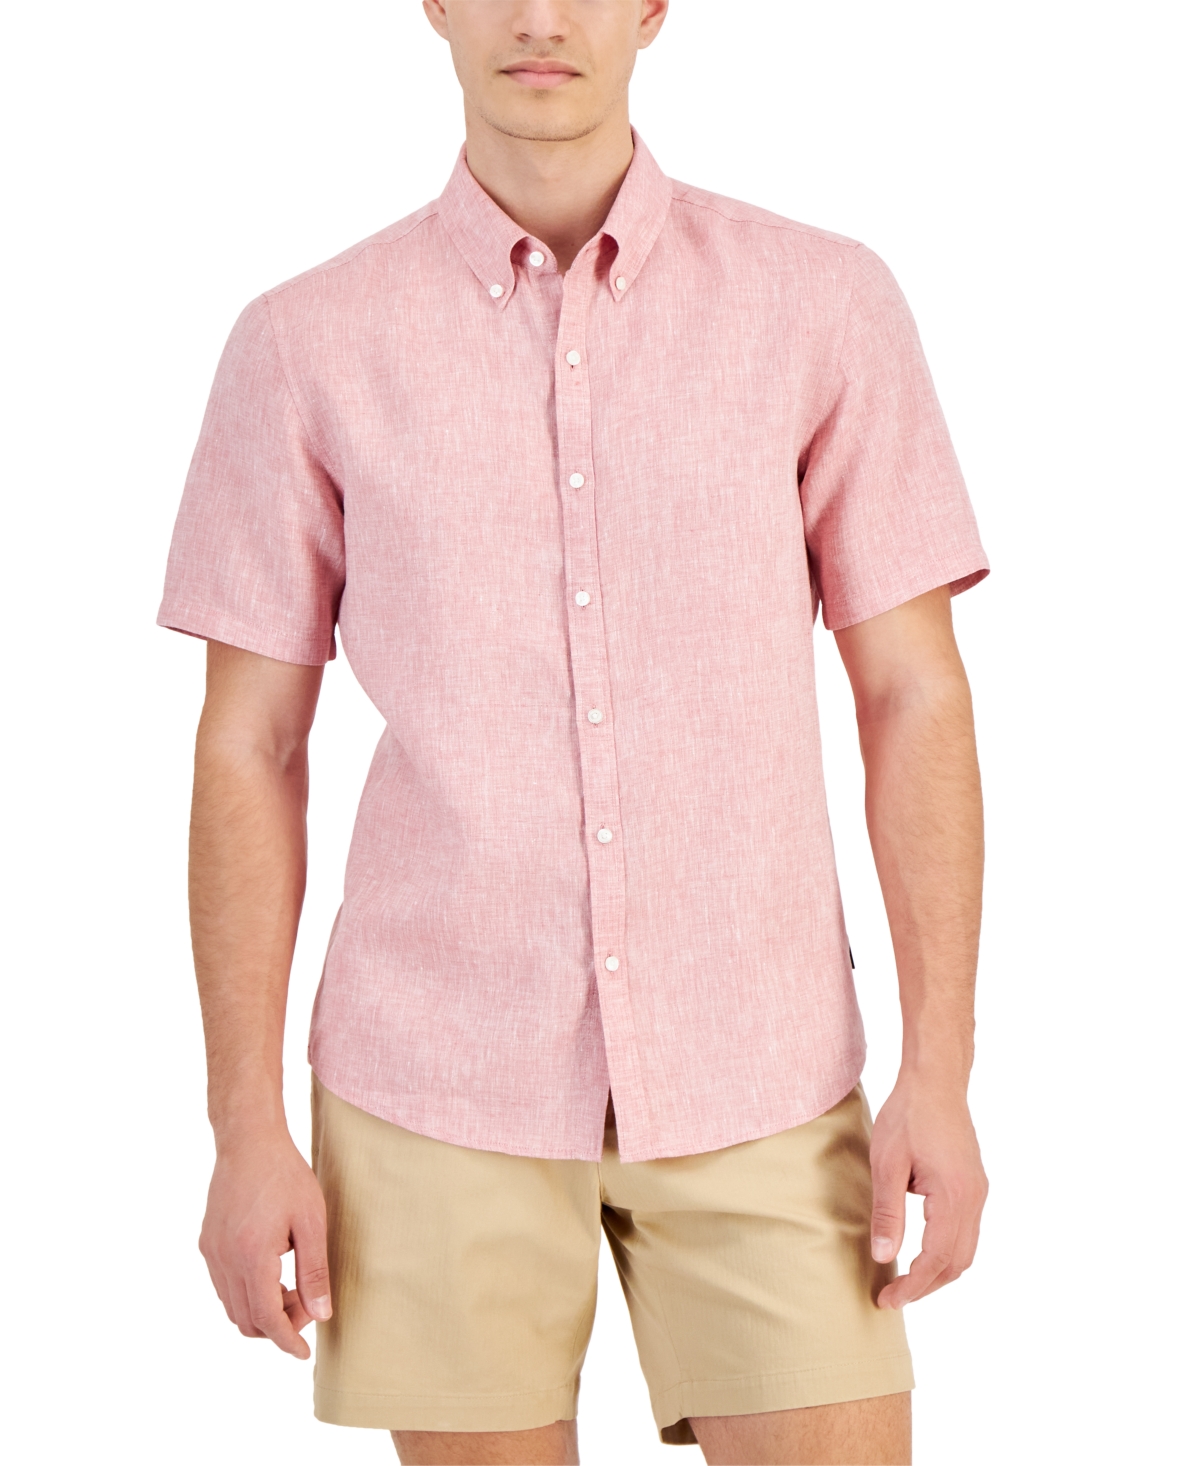 Michael Kors Men's Slim-fit Linen Short-sleeve Shirt In Dusty Rose